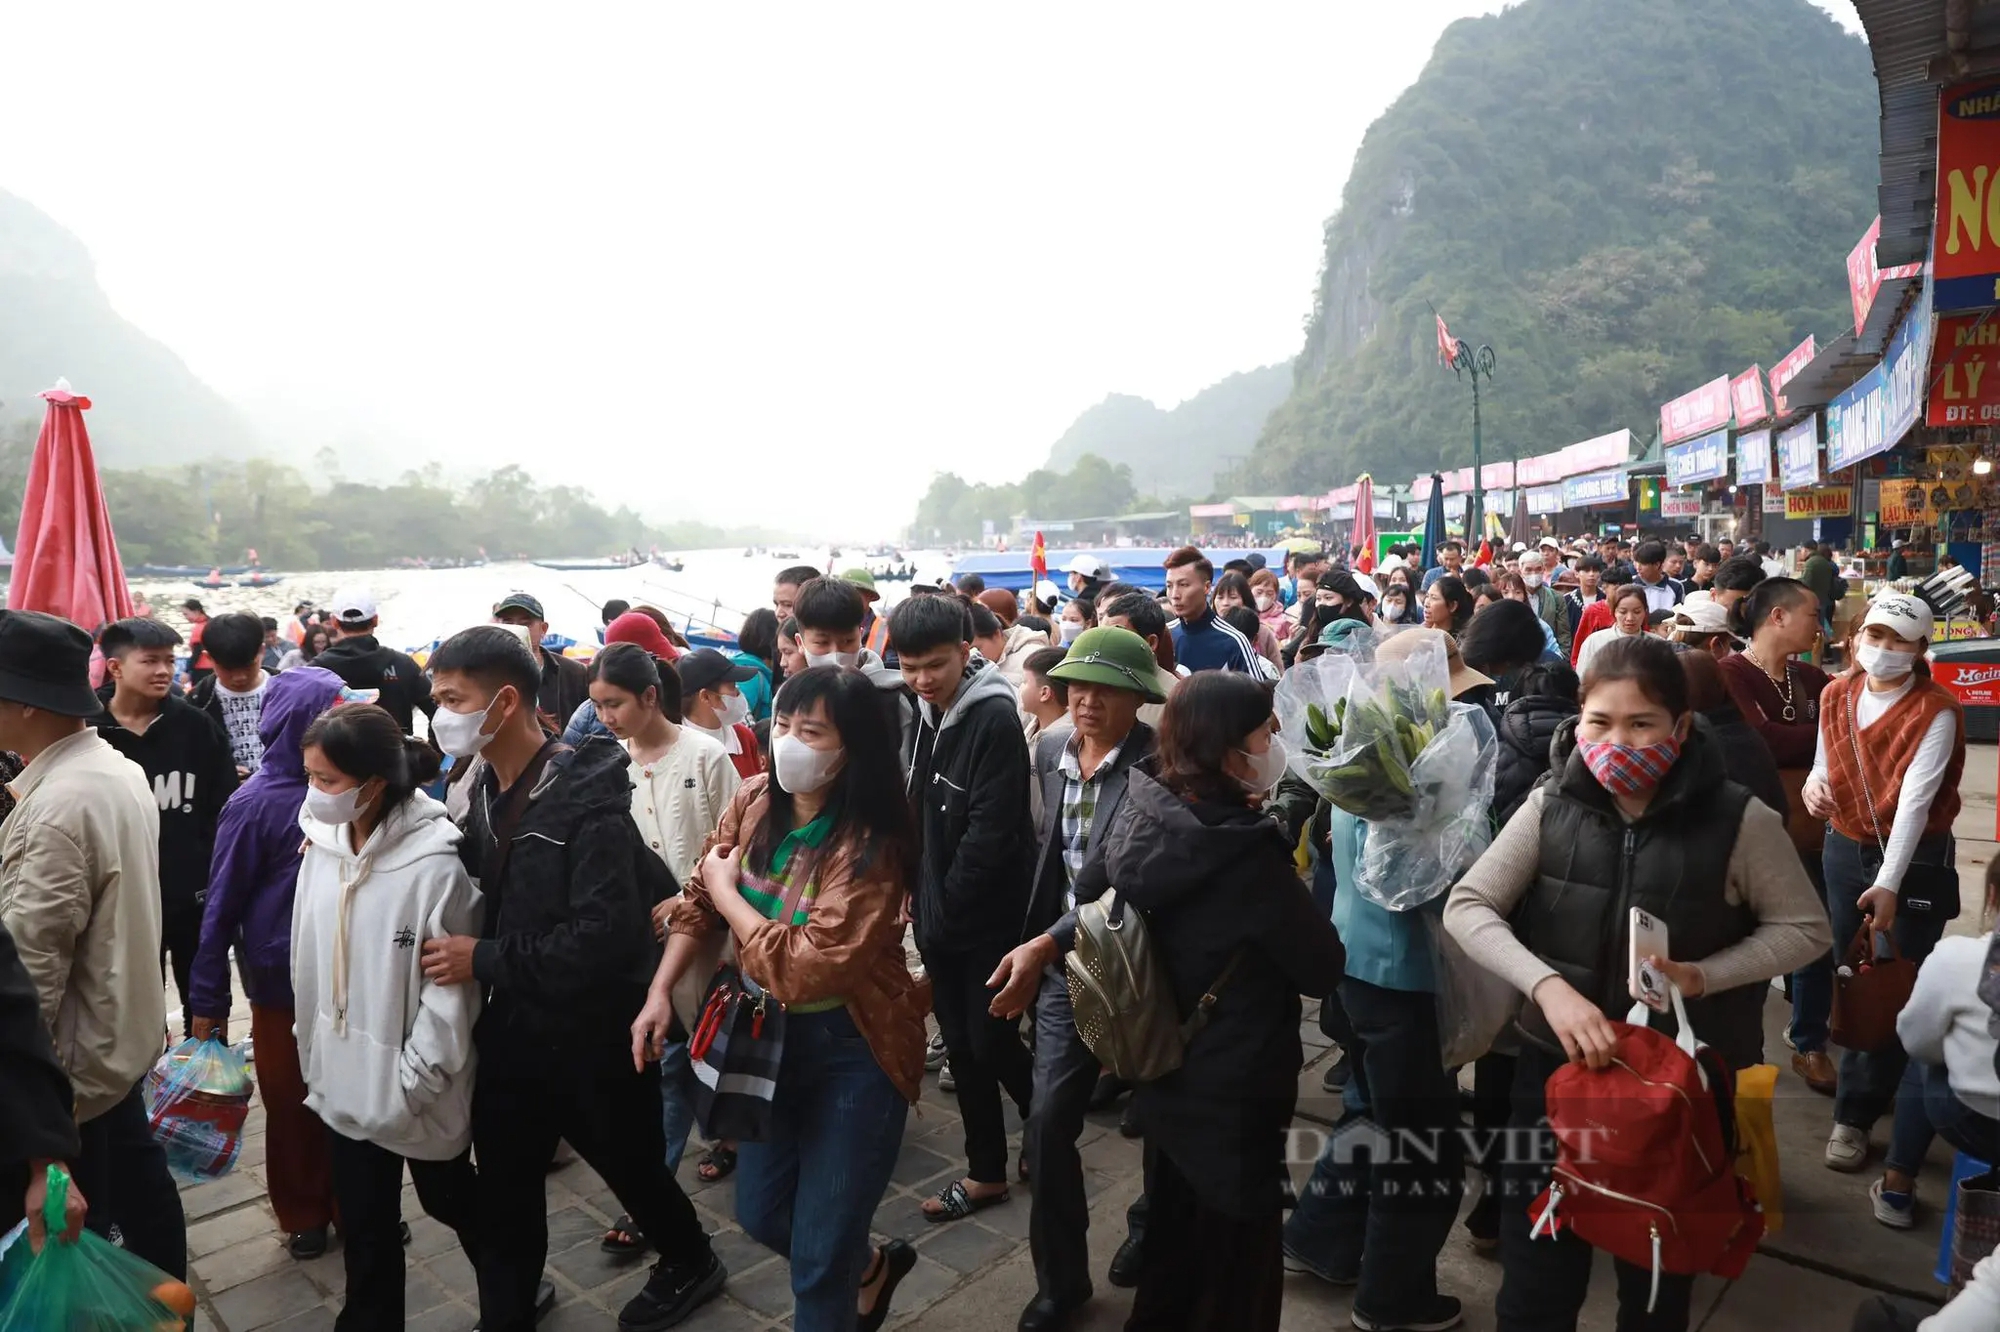 Chùa Hương đón hơn 140.000 lượt khách trước ngày khai hội- Ảnh 3.